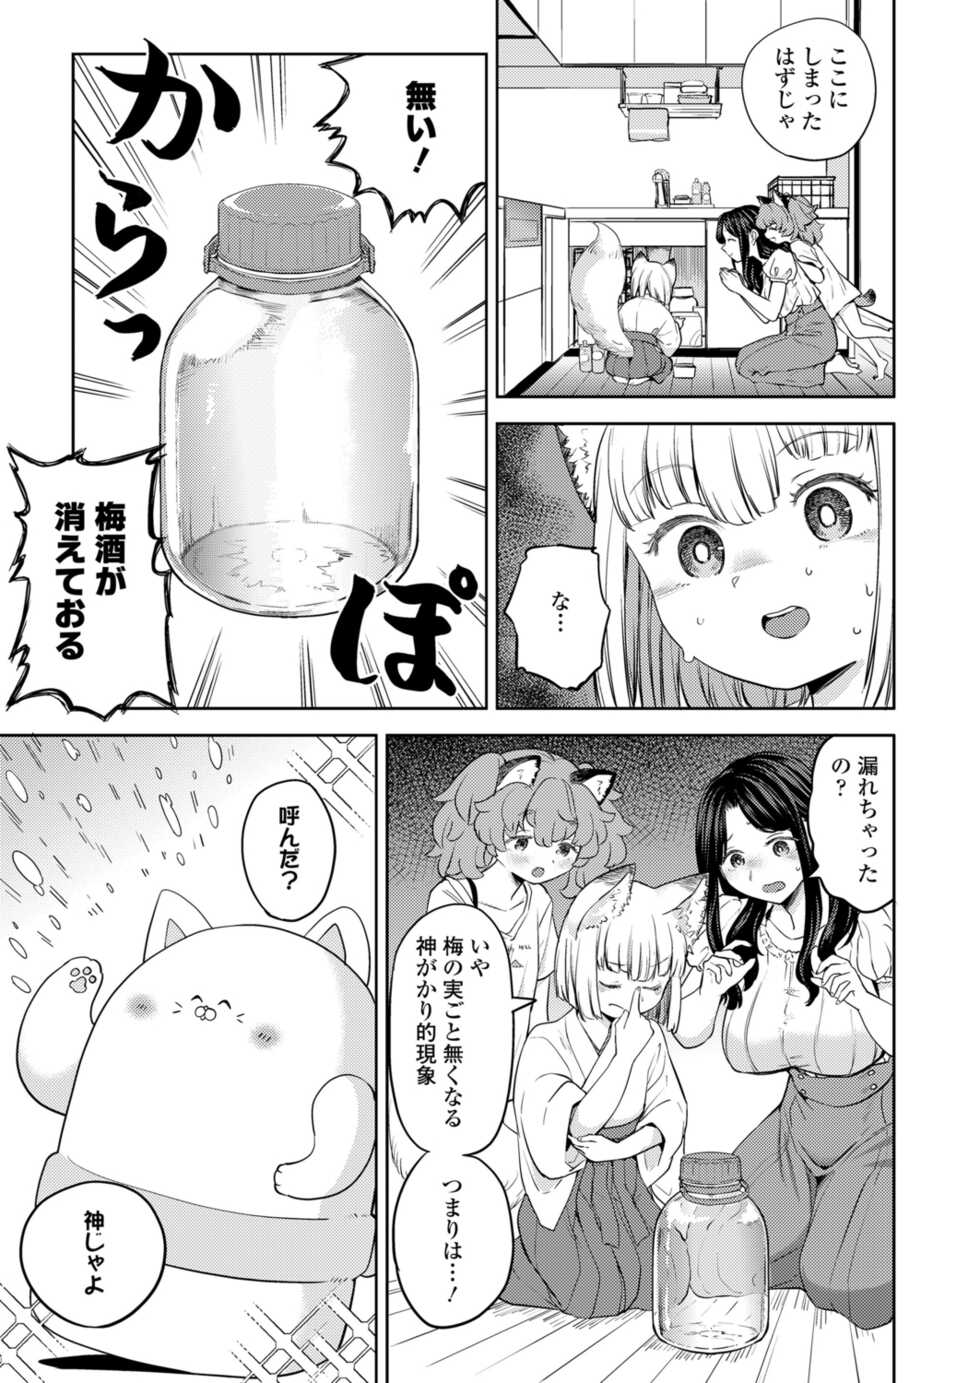 Towako 12 [Digital] - Page 39